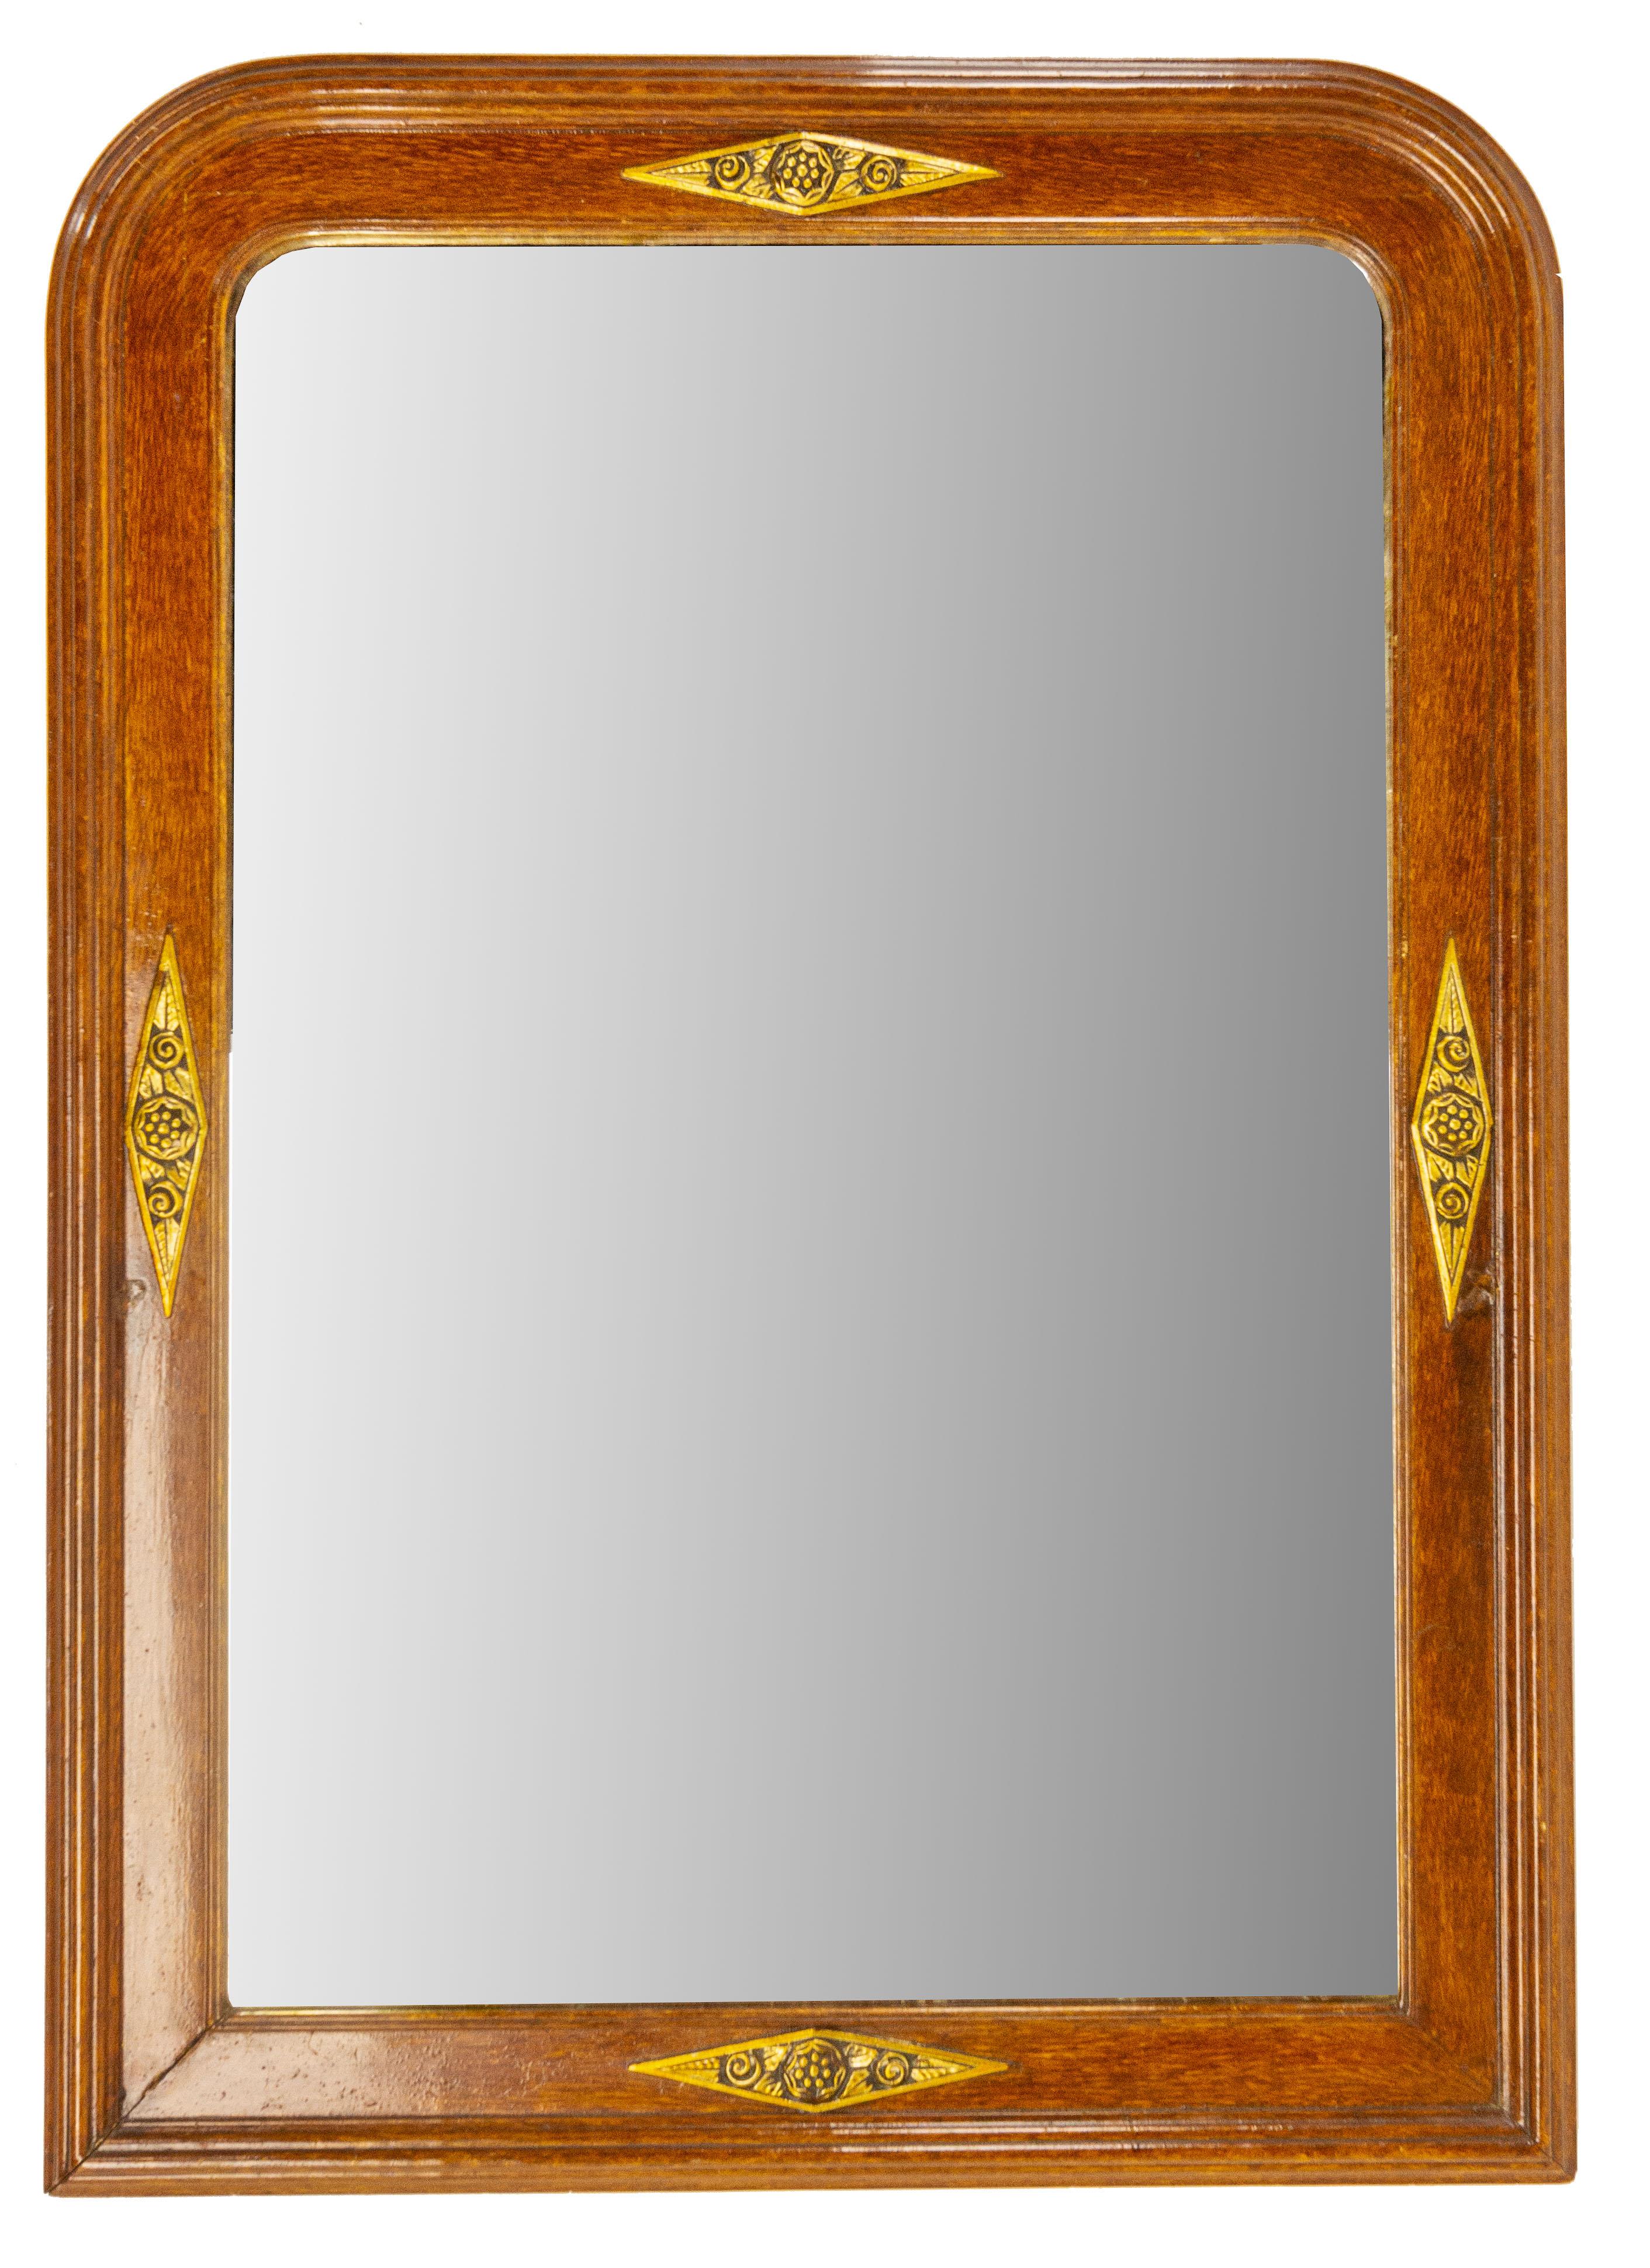 Miroir Art Déco en stuc,
Imitation bois et motifs floraux sur les parties dorées.
Miroir original.
Bon état ancien.

Expédition :
L 68,5 P 3 H 96 9,2 KG.